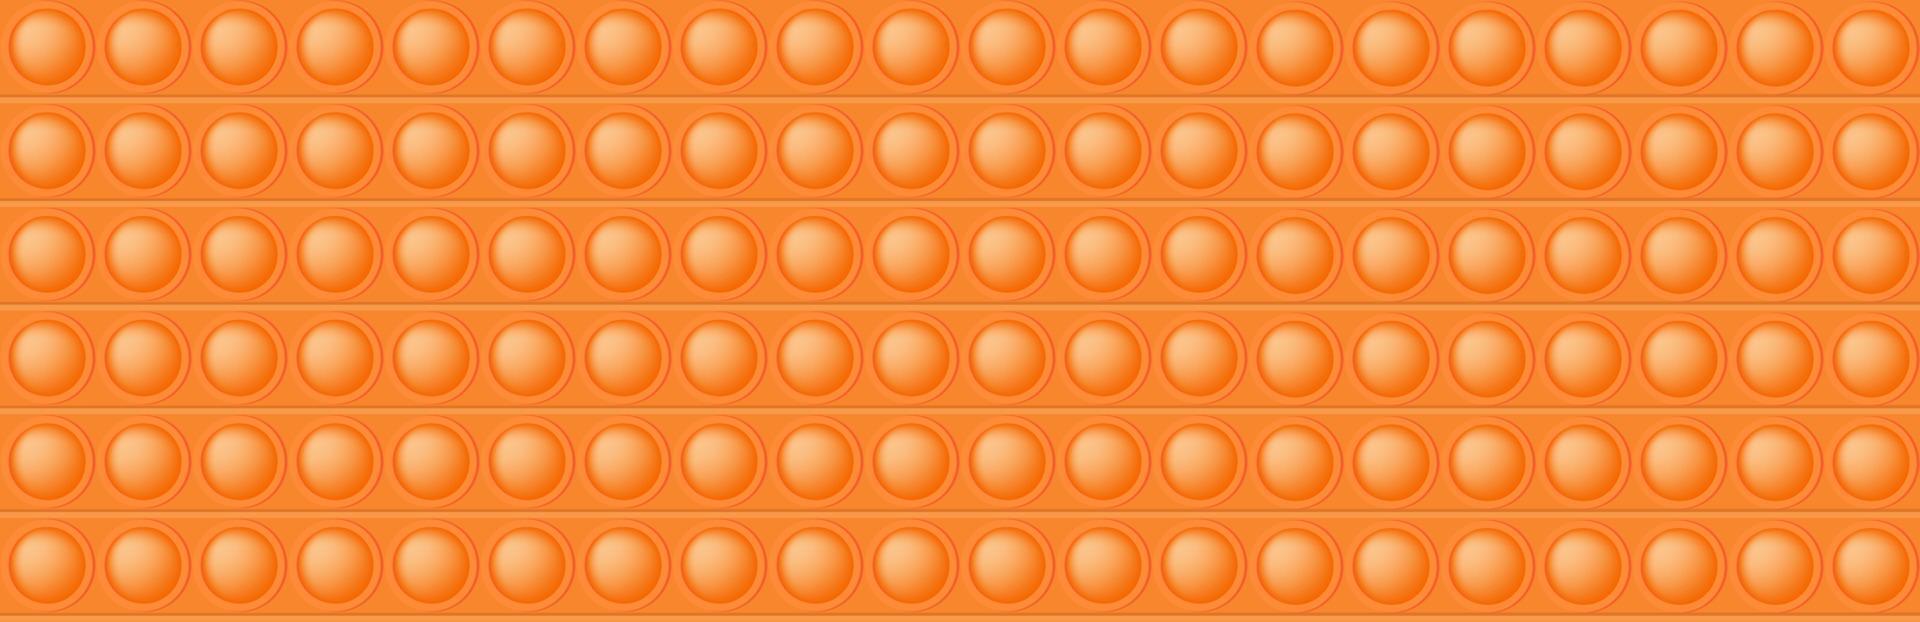 popping toy naranja de patrones sin fisuras como un juguete de silicona de moda. adictivo juguete antiestrés en color brillante. ilustración vectorial en formato rectangular para banner. vector